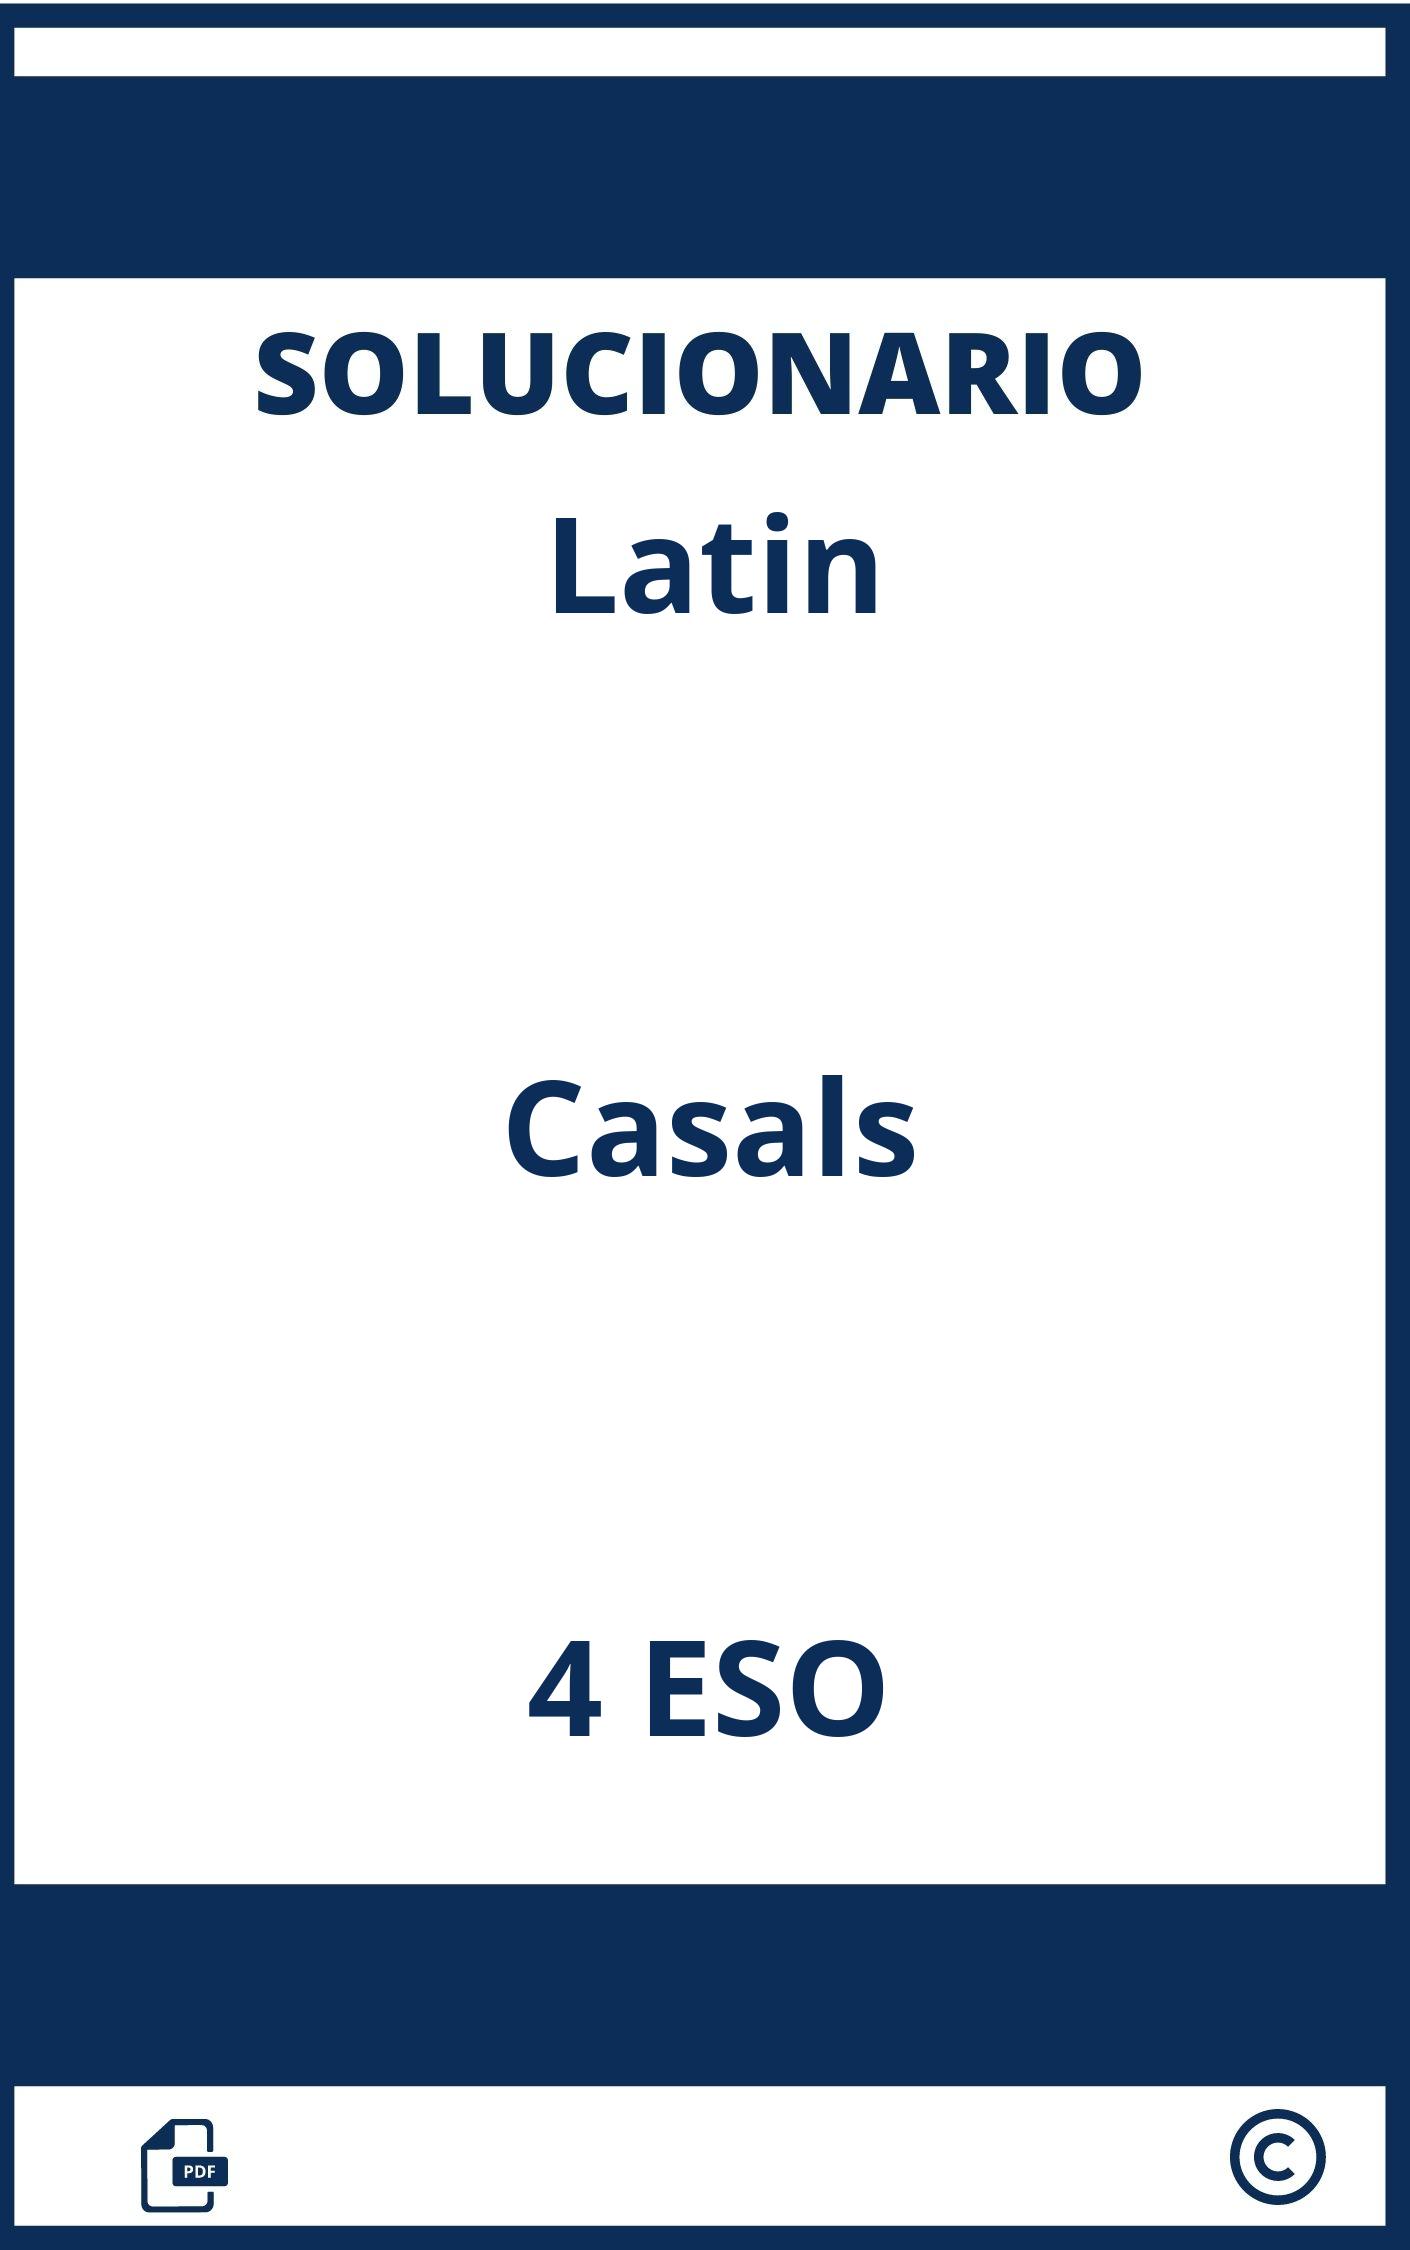 Solucionario Latin 4 Eso Casals